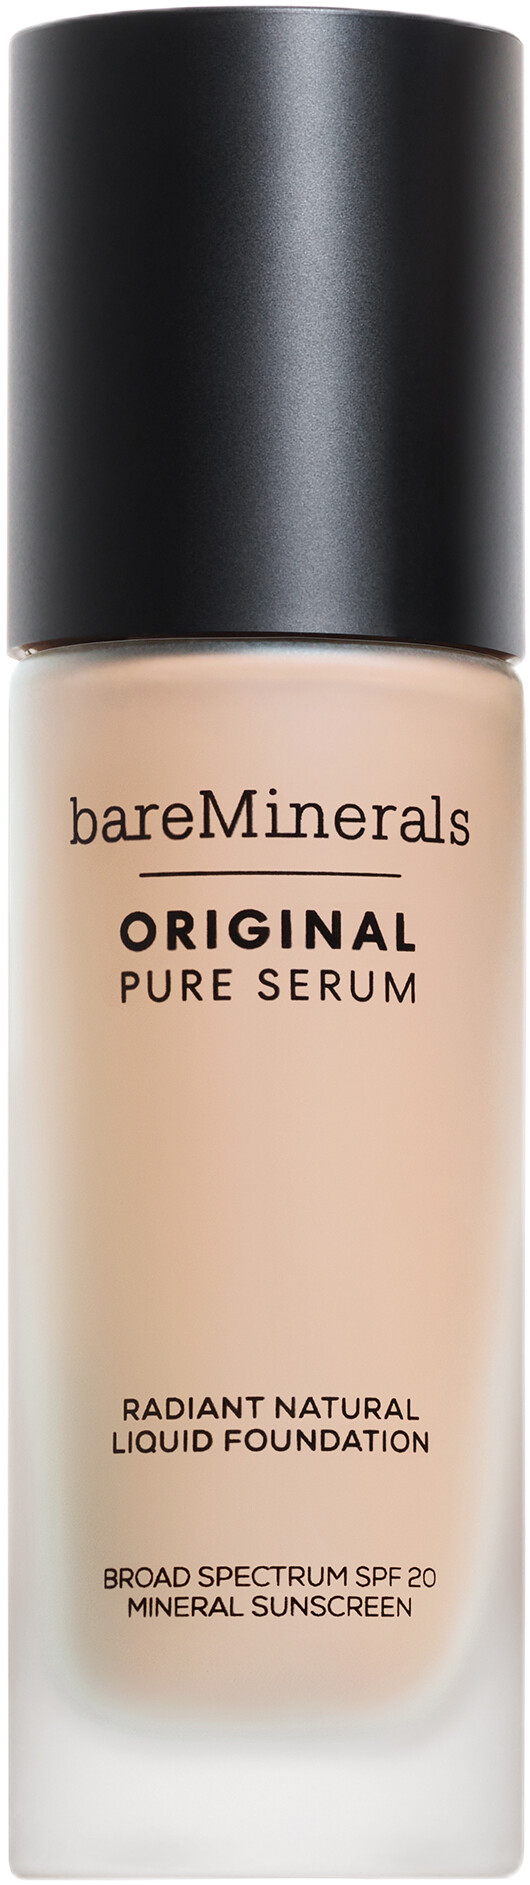 bareMinerals Original Pure Serum Radiant Natural Liquid Foundation SPF20 30ml 1 - Fair Cool